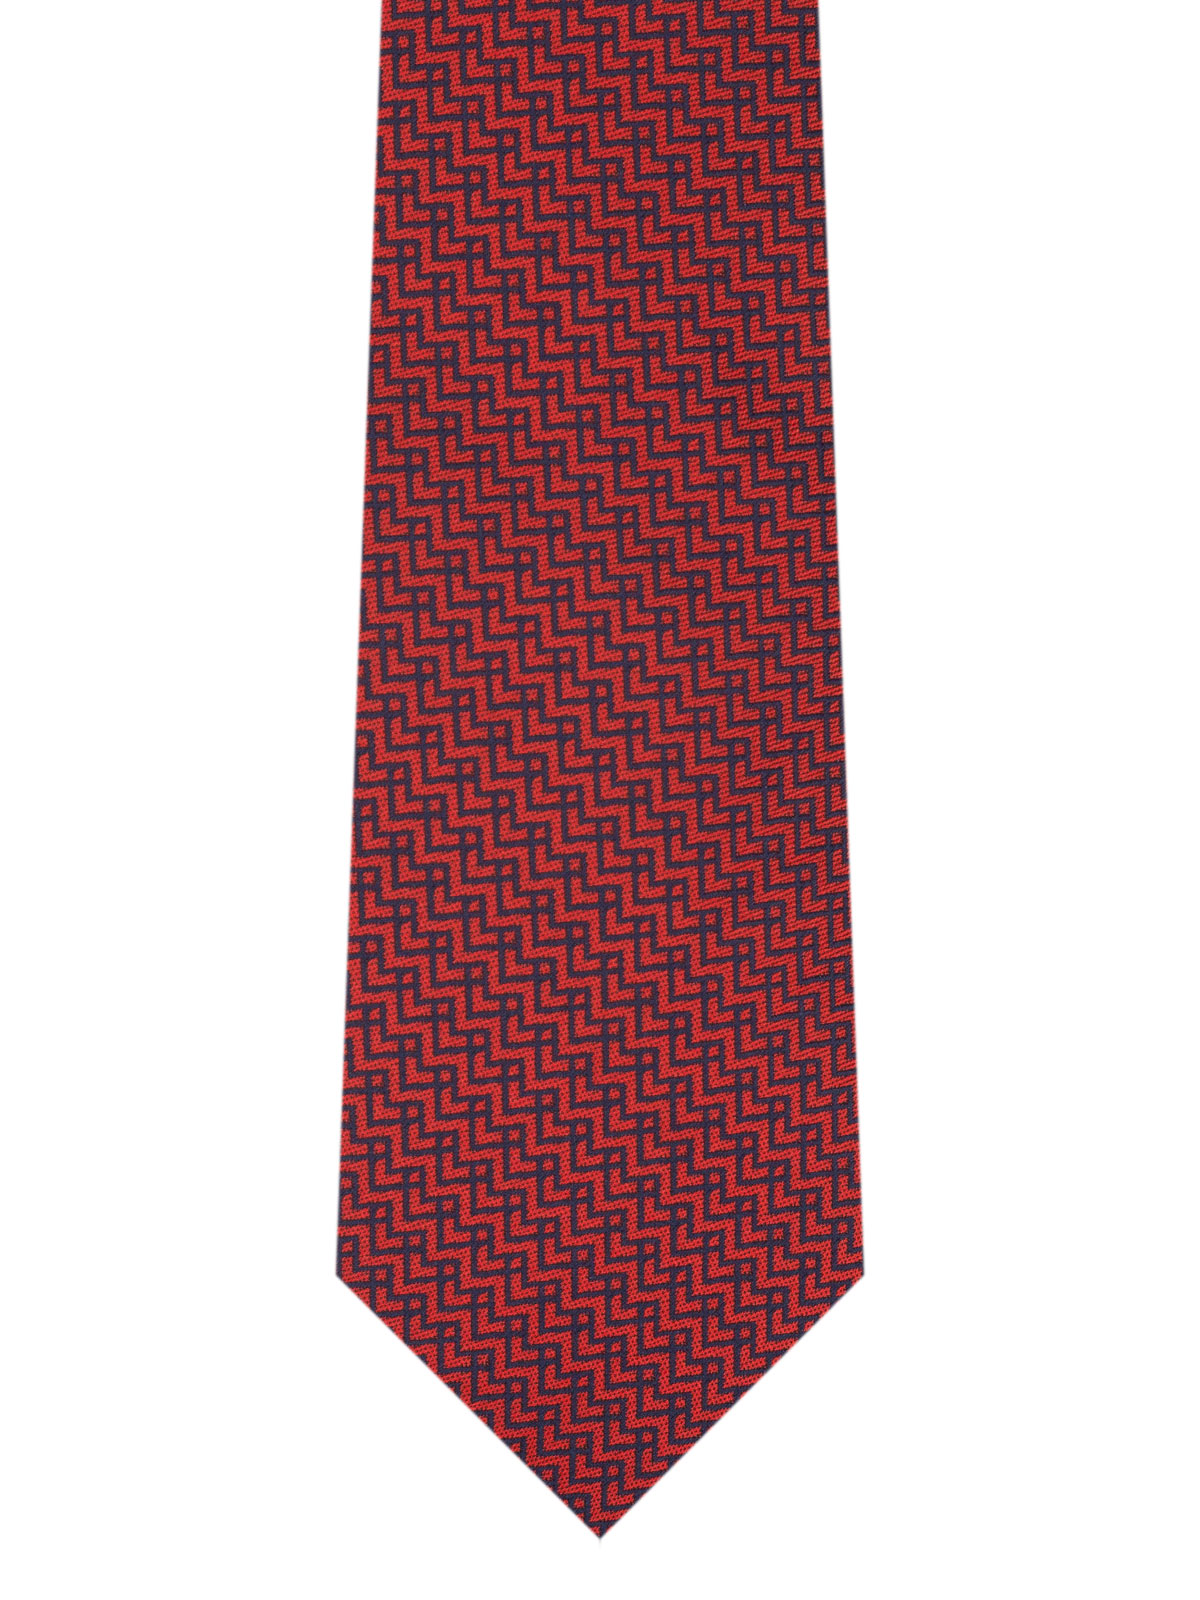 Κόκκινη γραβάτα σε μπλε ζιγκζαγκ γραμμέ - 10187 - € 14.06 img2